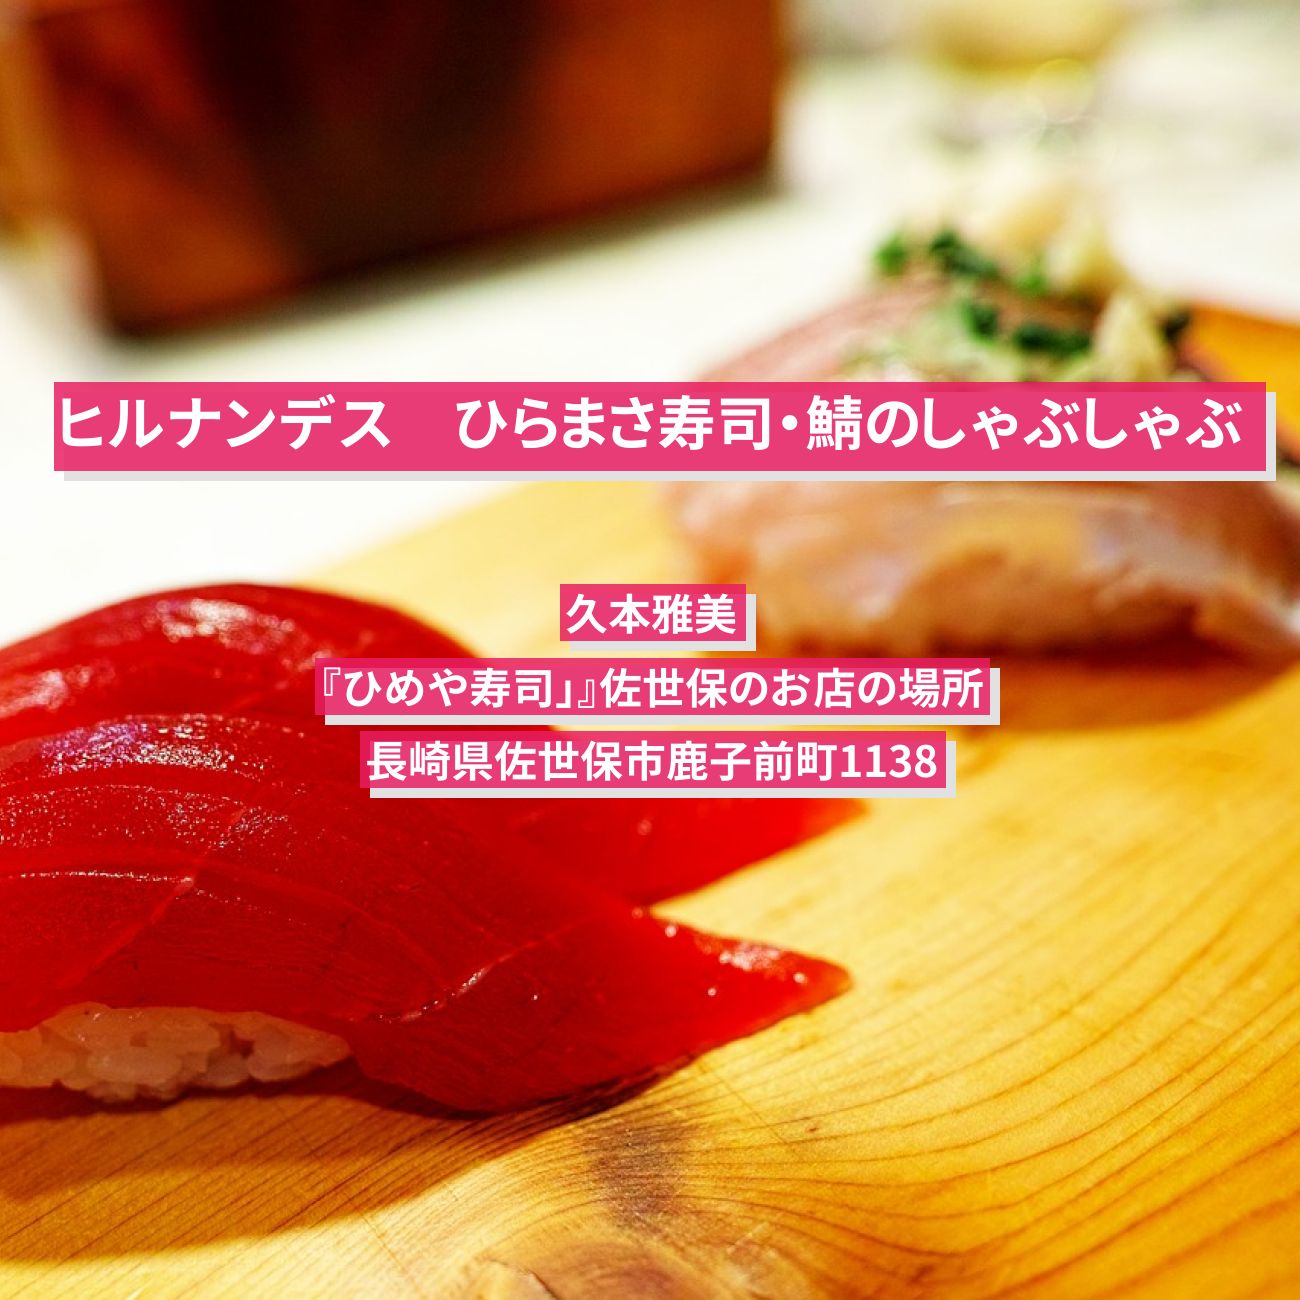 【ヒルナンデス】寿司(ひらまさ)・鯖のしゃぶしゃぶ　久本雅美『ひめや寿司」』佐世保のお店の場所